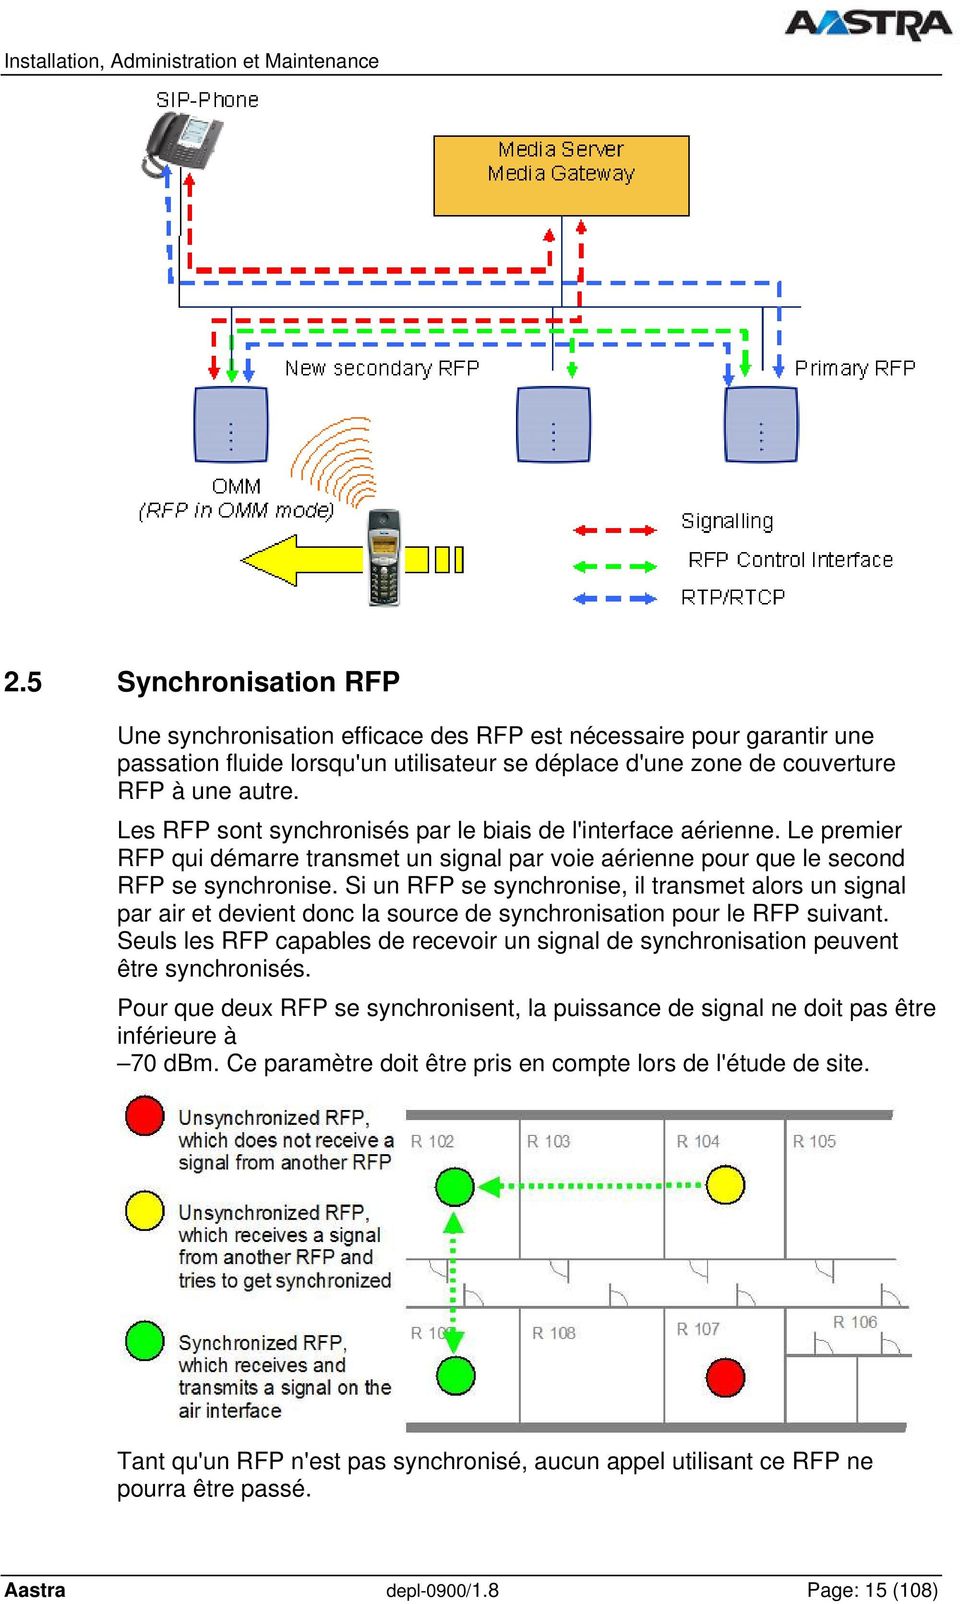 Si un RFP se synchronise, il transmet alors un signal par air et devient donc la source de synchronisation pour le RFP suivant.